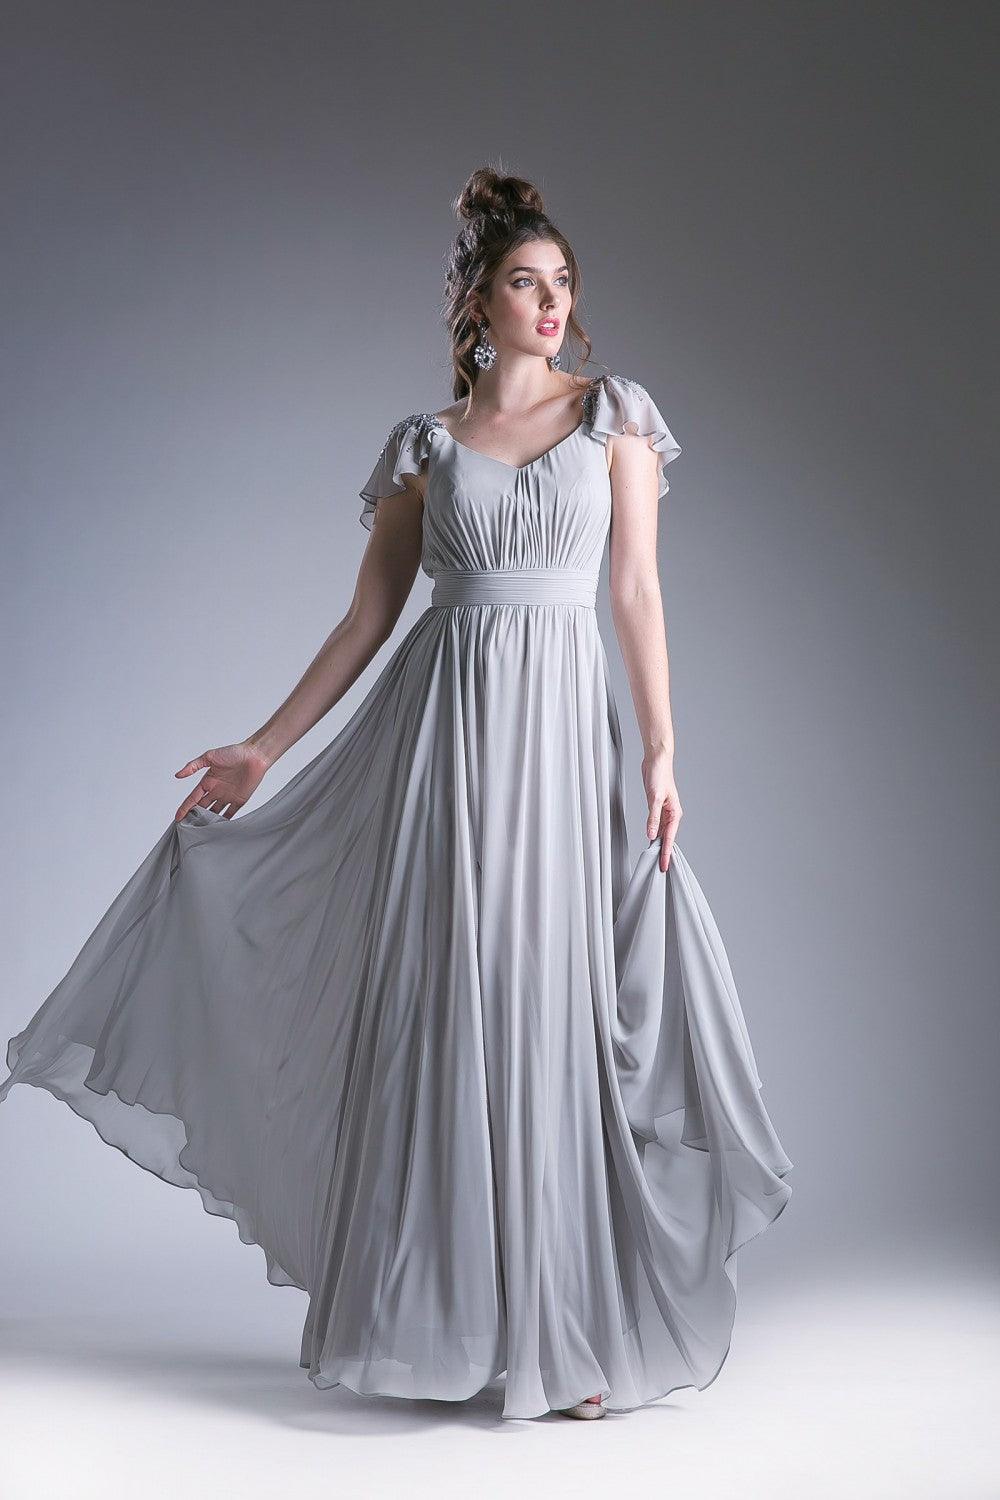 Long Formal Dress Empire Waist Chiffon - The Dress Outlet Cinderella Divine